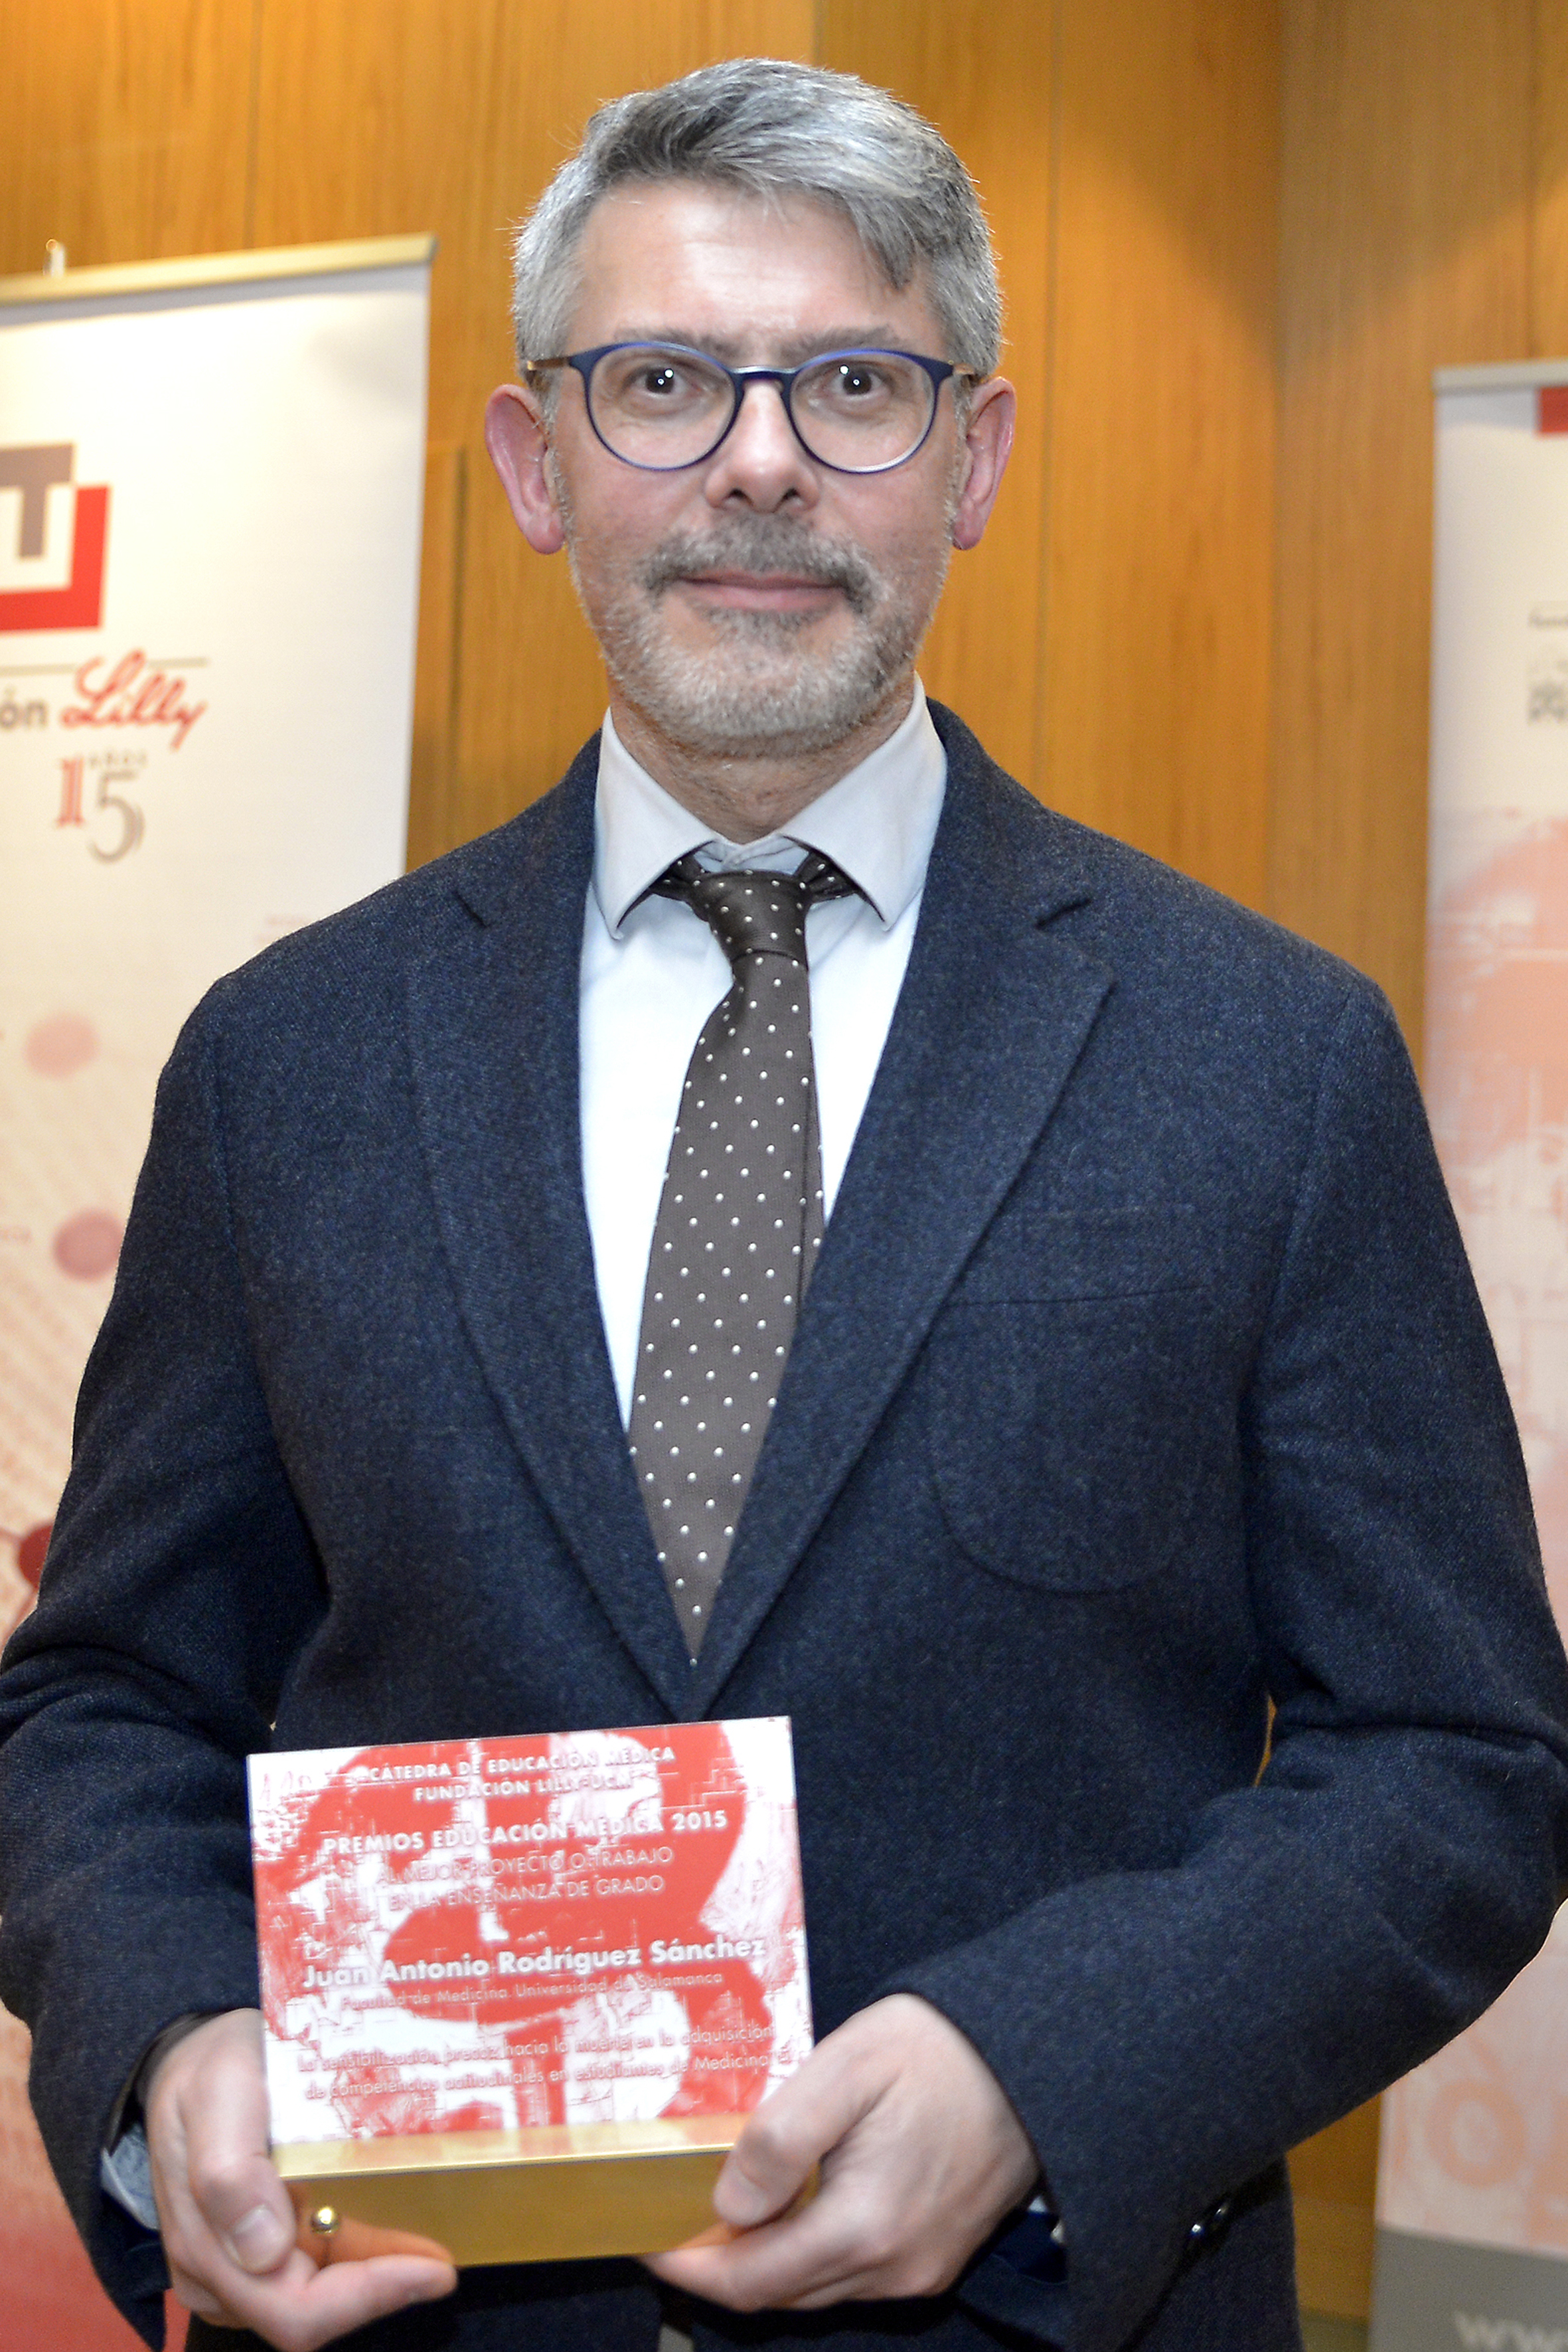 El profesor Juan Antonio Rodríguez Sánchez, de la Facultad de Medicina de la Universidad de Salamanca, recibe el Premio de Educación Médica 2015